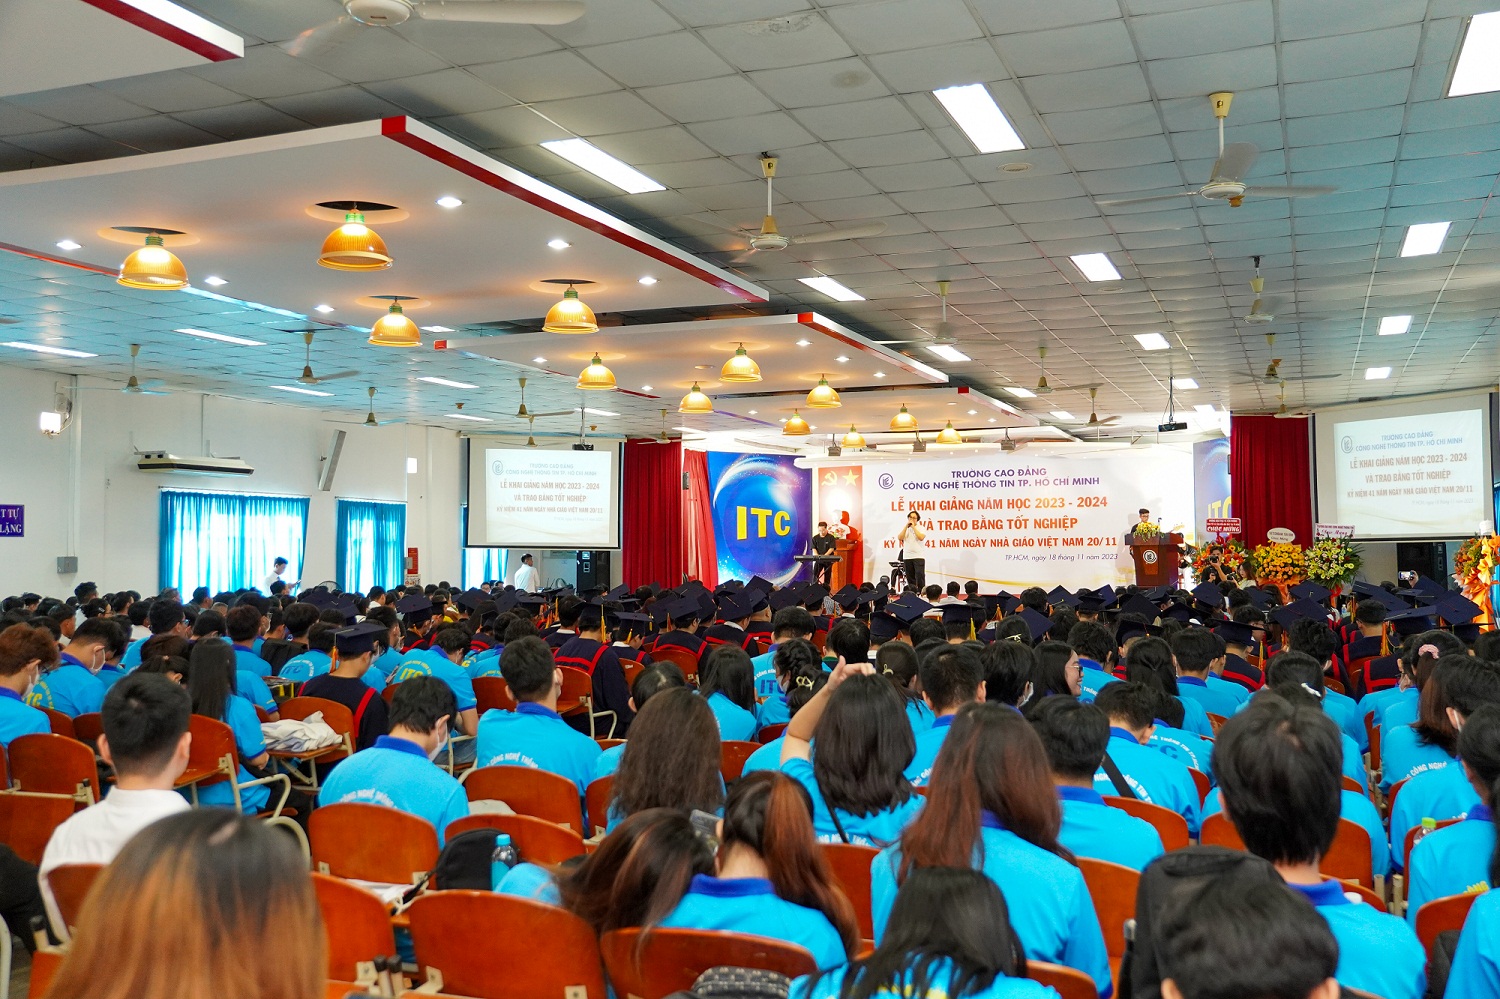 Trường ITC long trọng tổ chức Lễ khai giảng năm học 2023 – 2024 và trao bằng tốt nghiệp; Kỷ niệm 41 năm ngày Nhà giáo Việt Nam 20/11